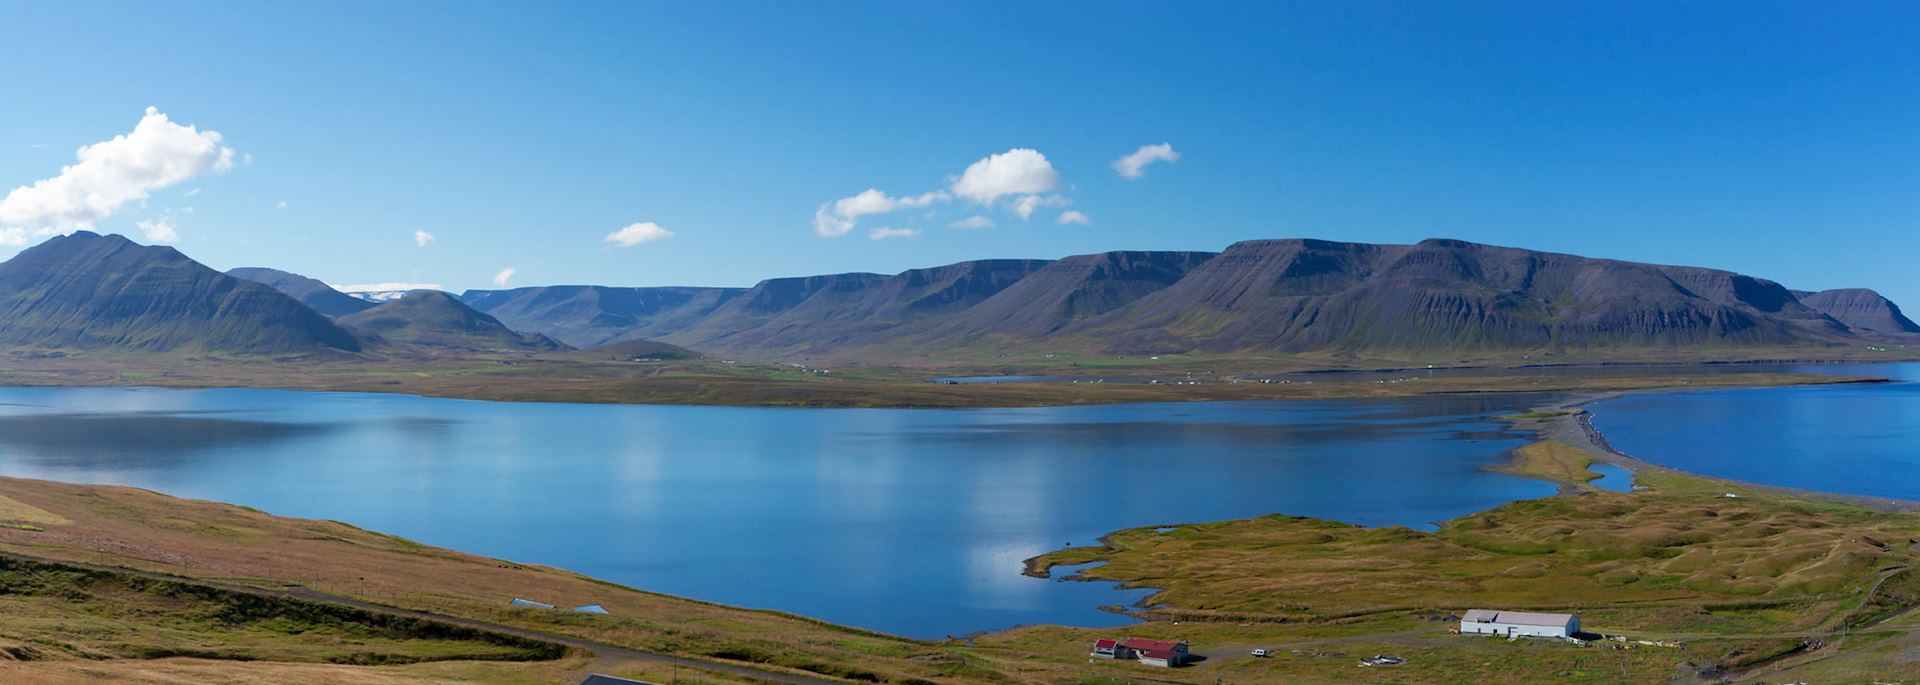 Skagafjörður, Troll Peninsula, Iceland